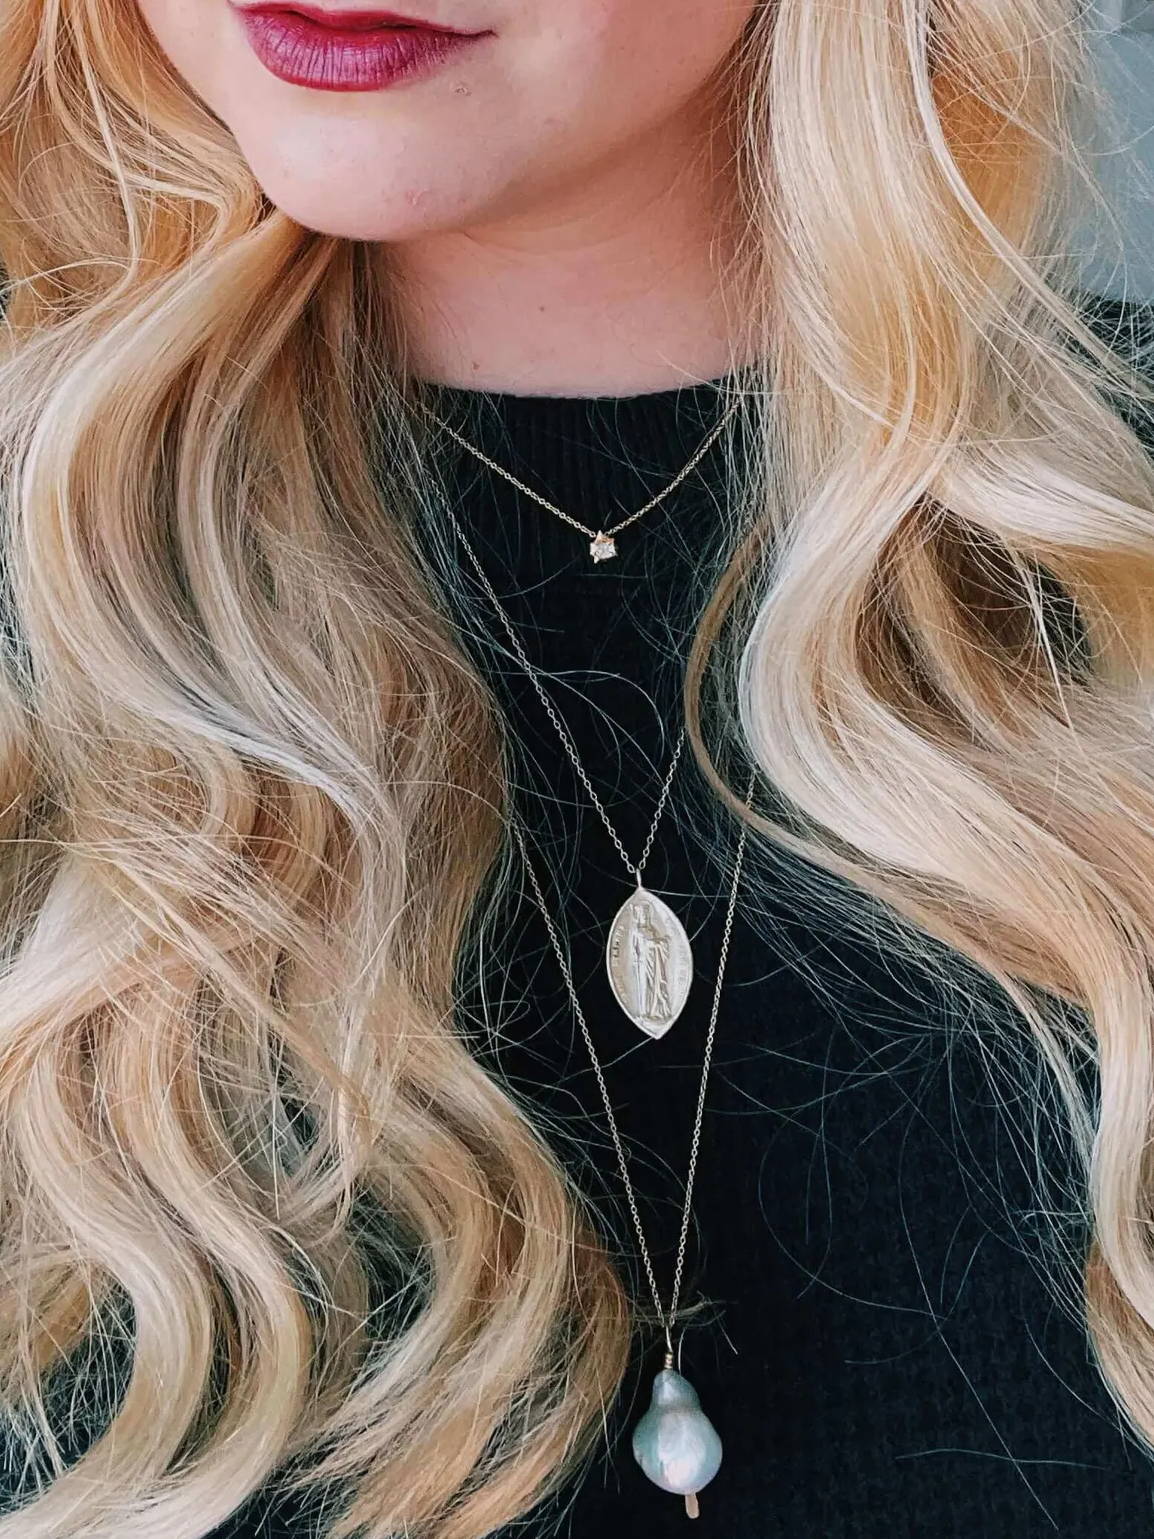 Lauren Maxwell's necklaces